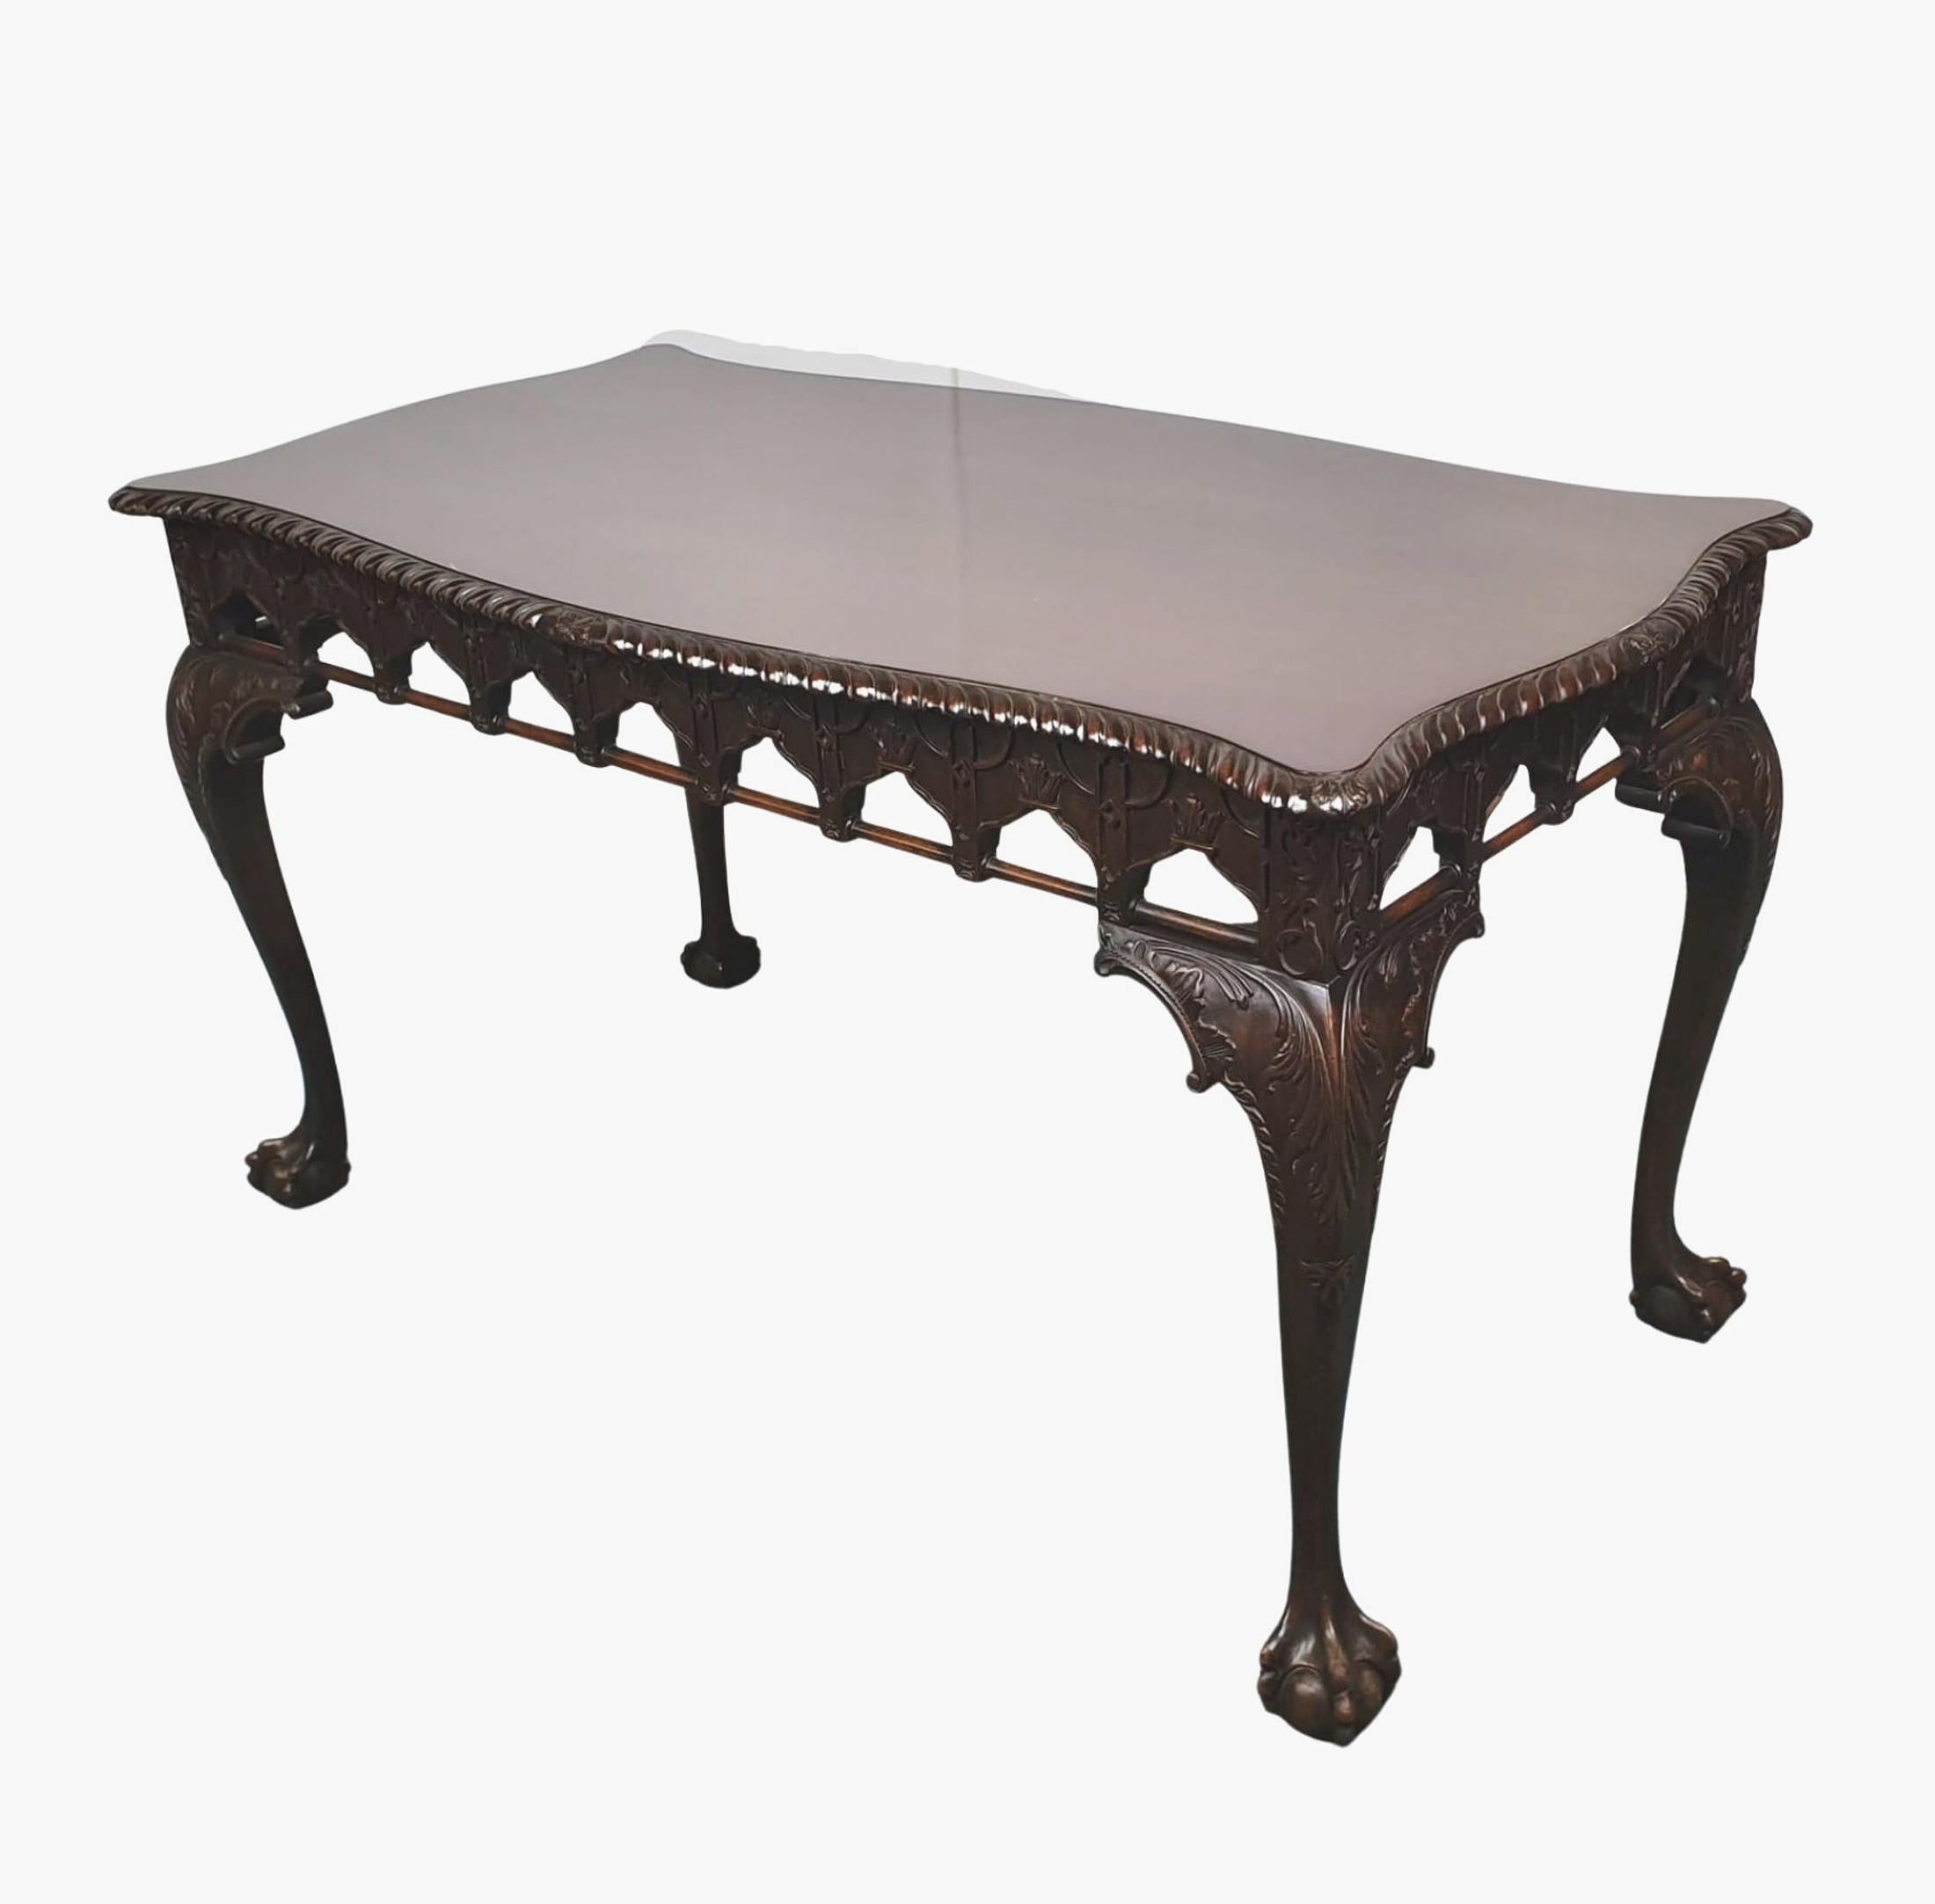 Magnifique table centrale en acajou du début du 20e siècle, de style gothique Chippendale. Le plateau façonné et mouluré de forme rectangulaire avec un bord godronné sculpté et un motif de feuillage centré est surmonté d'une frise minutieusement